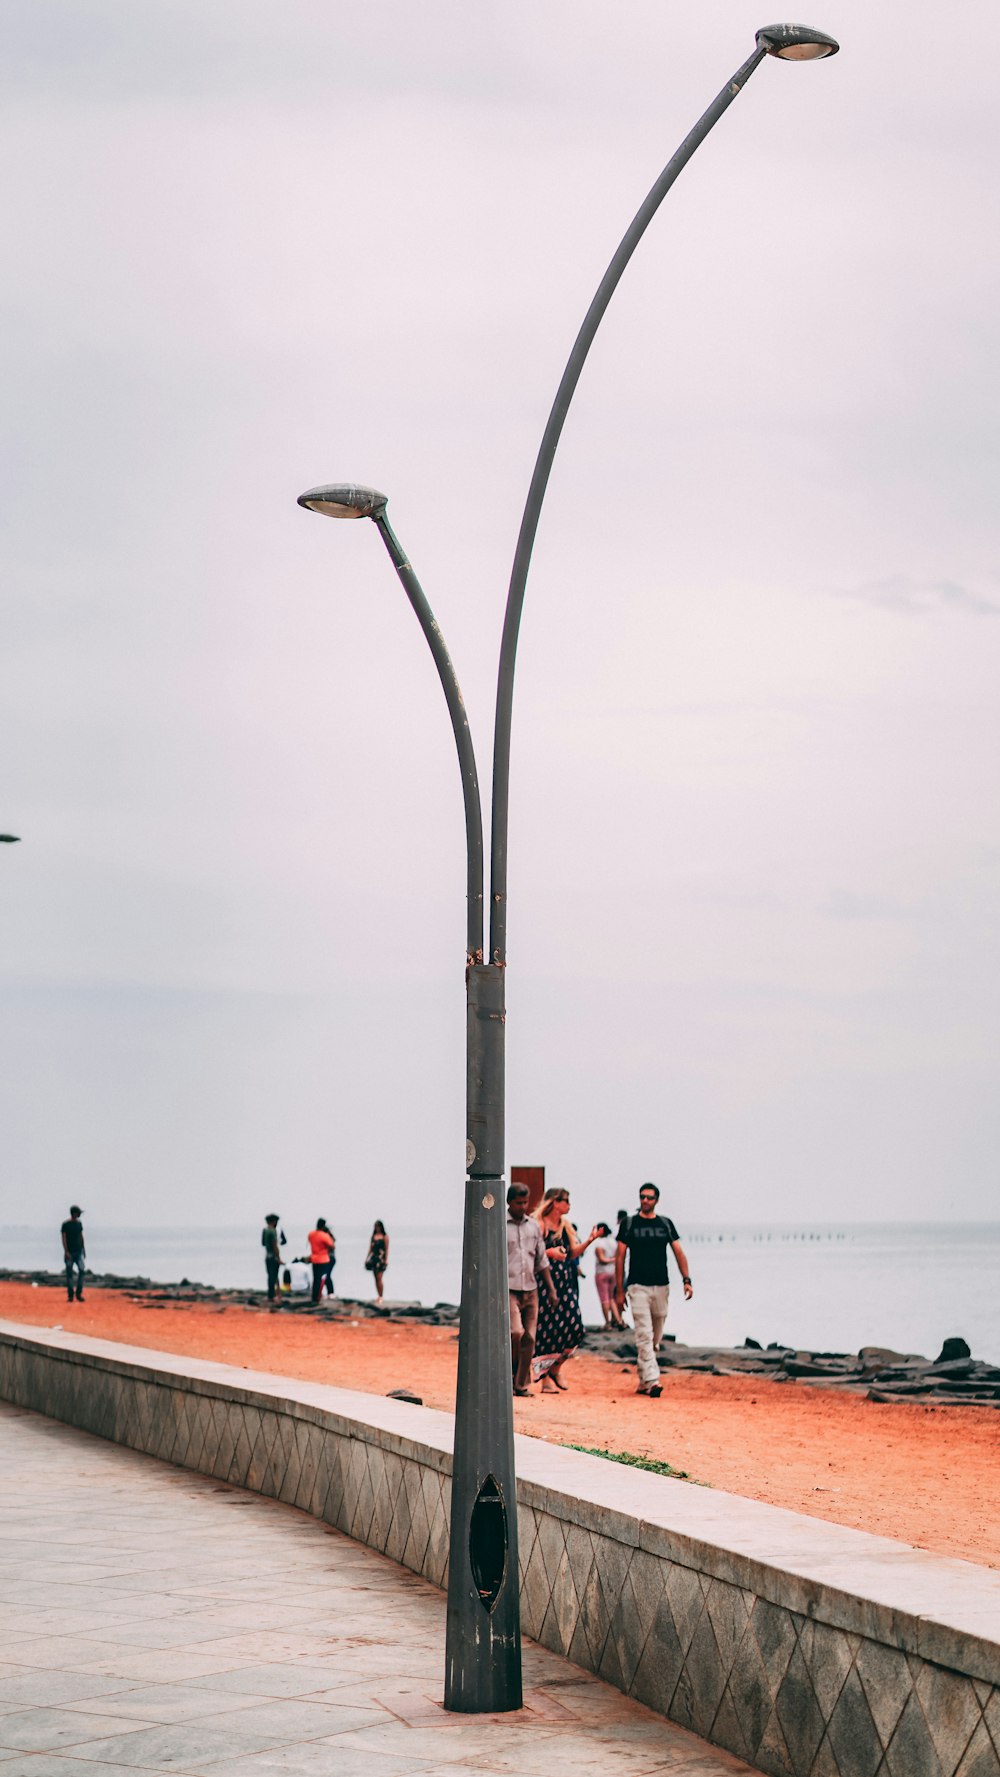 Eine Gruppe von Menschen, die an einem Strand neben einem Lichtmast spazieren gehen